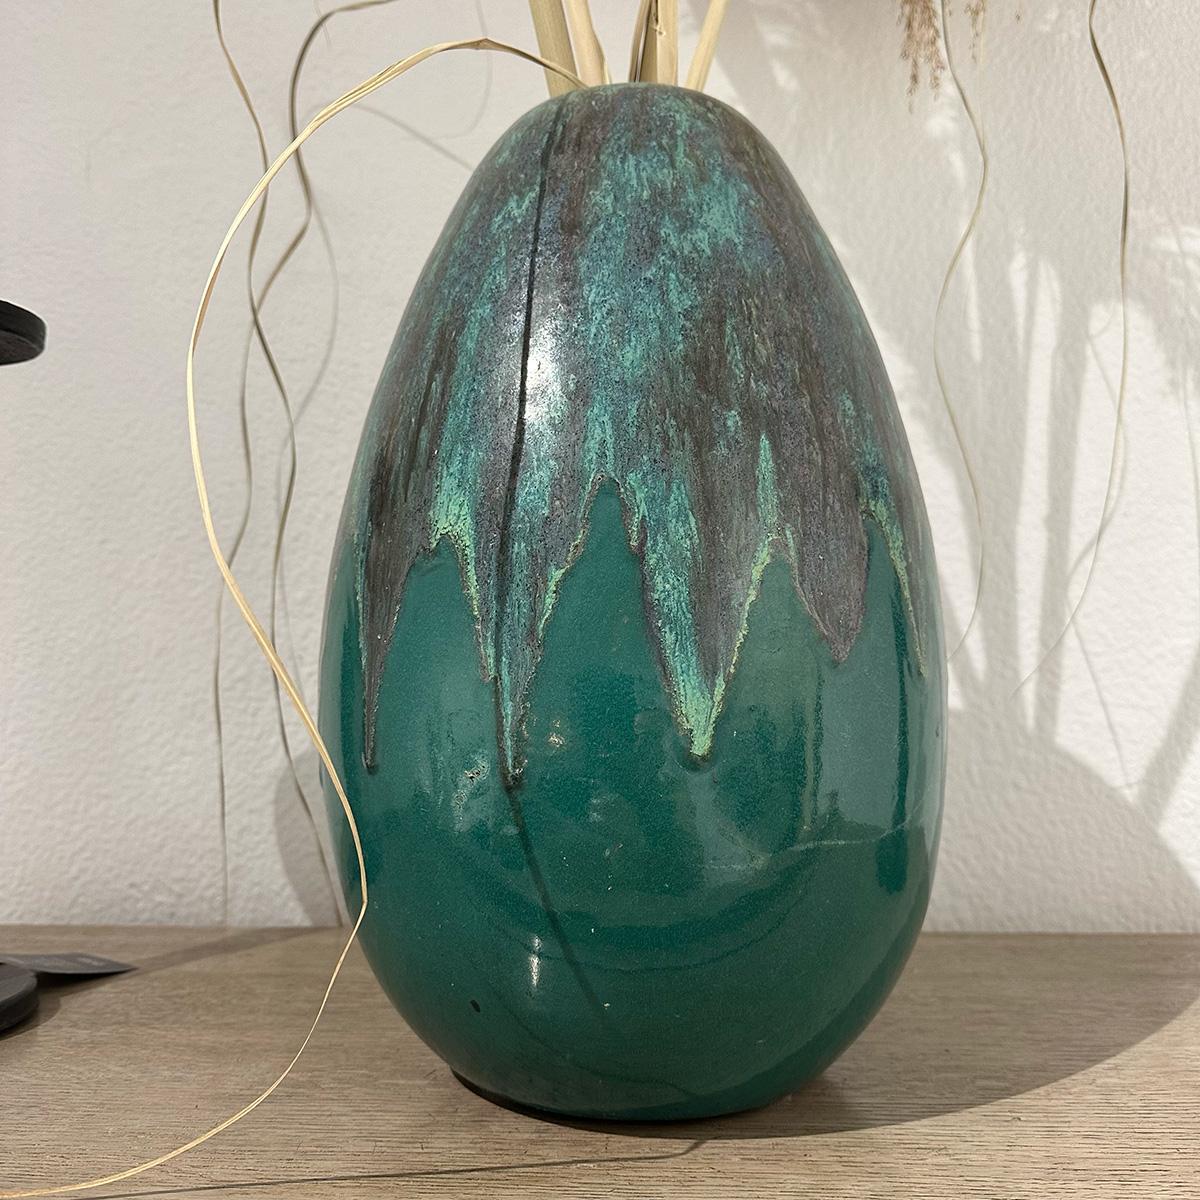 Un grand vase vert en céramique émaillée de l'Atelier Primavera, datant des années 1950, est un chef-d'œuvre qui incarne l'art de la céramique du milieu du siècle. Fabriqué par le prestigieux Atelier Primavera, un atelier français renommé qui a joué